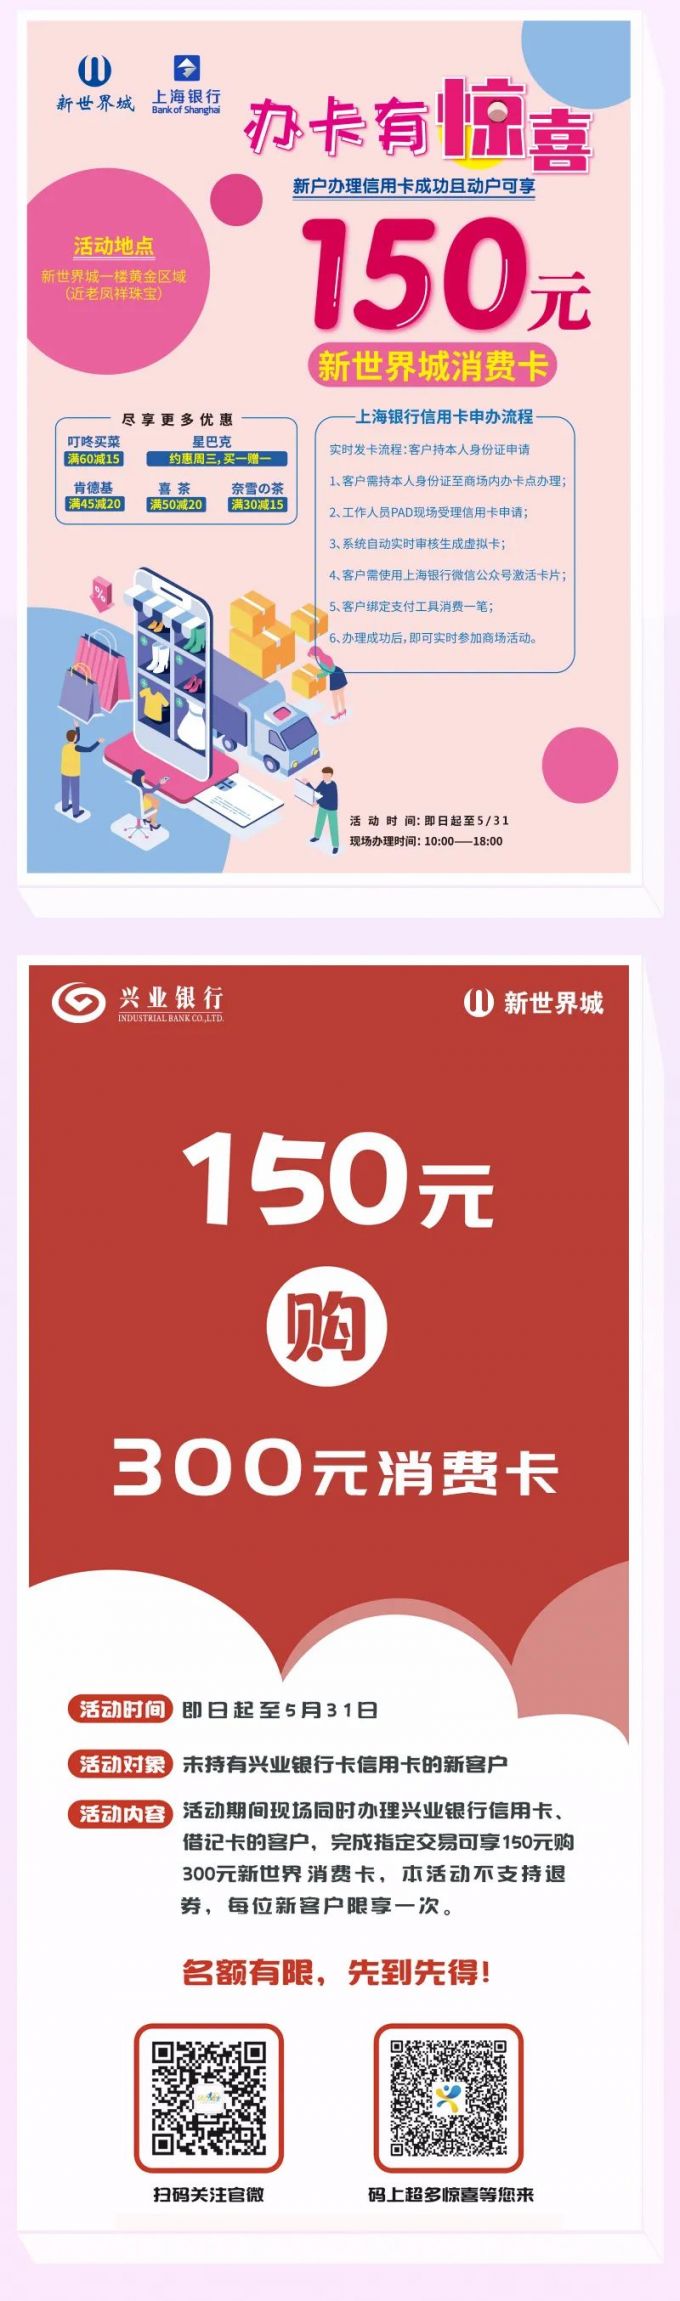 上海新世界城2020母親節折扣 800團1000元現金券